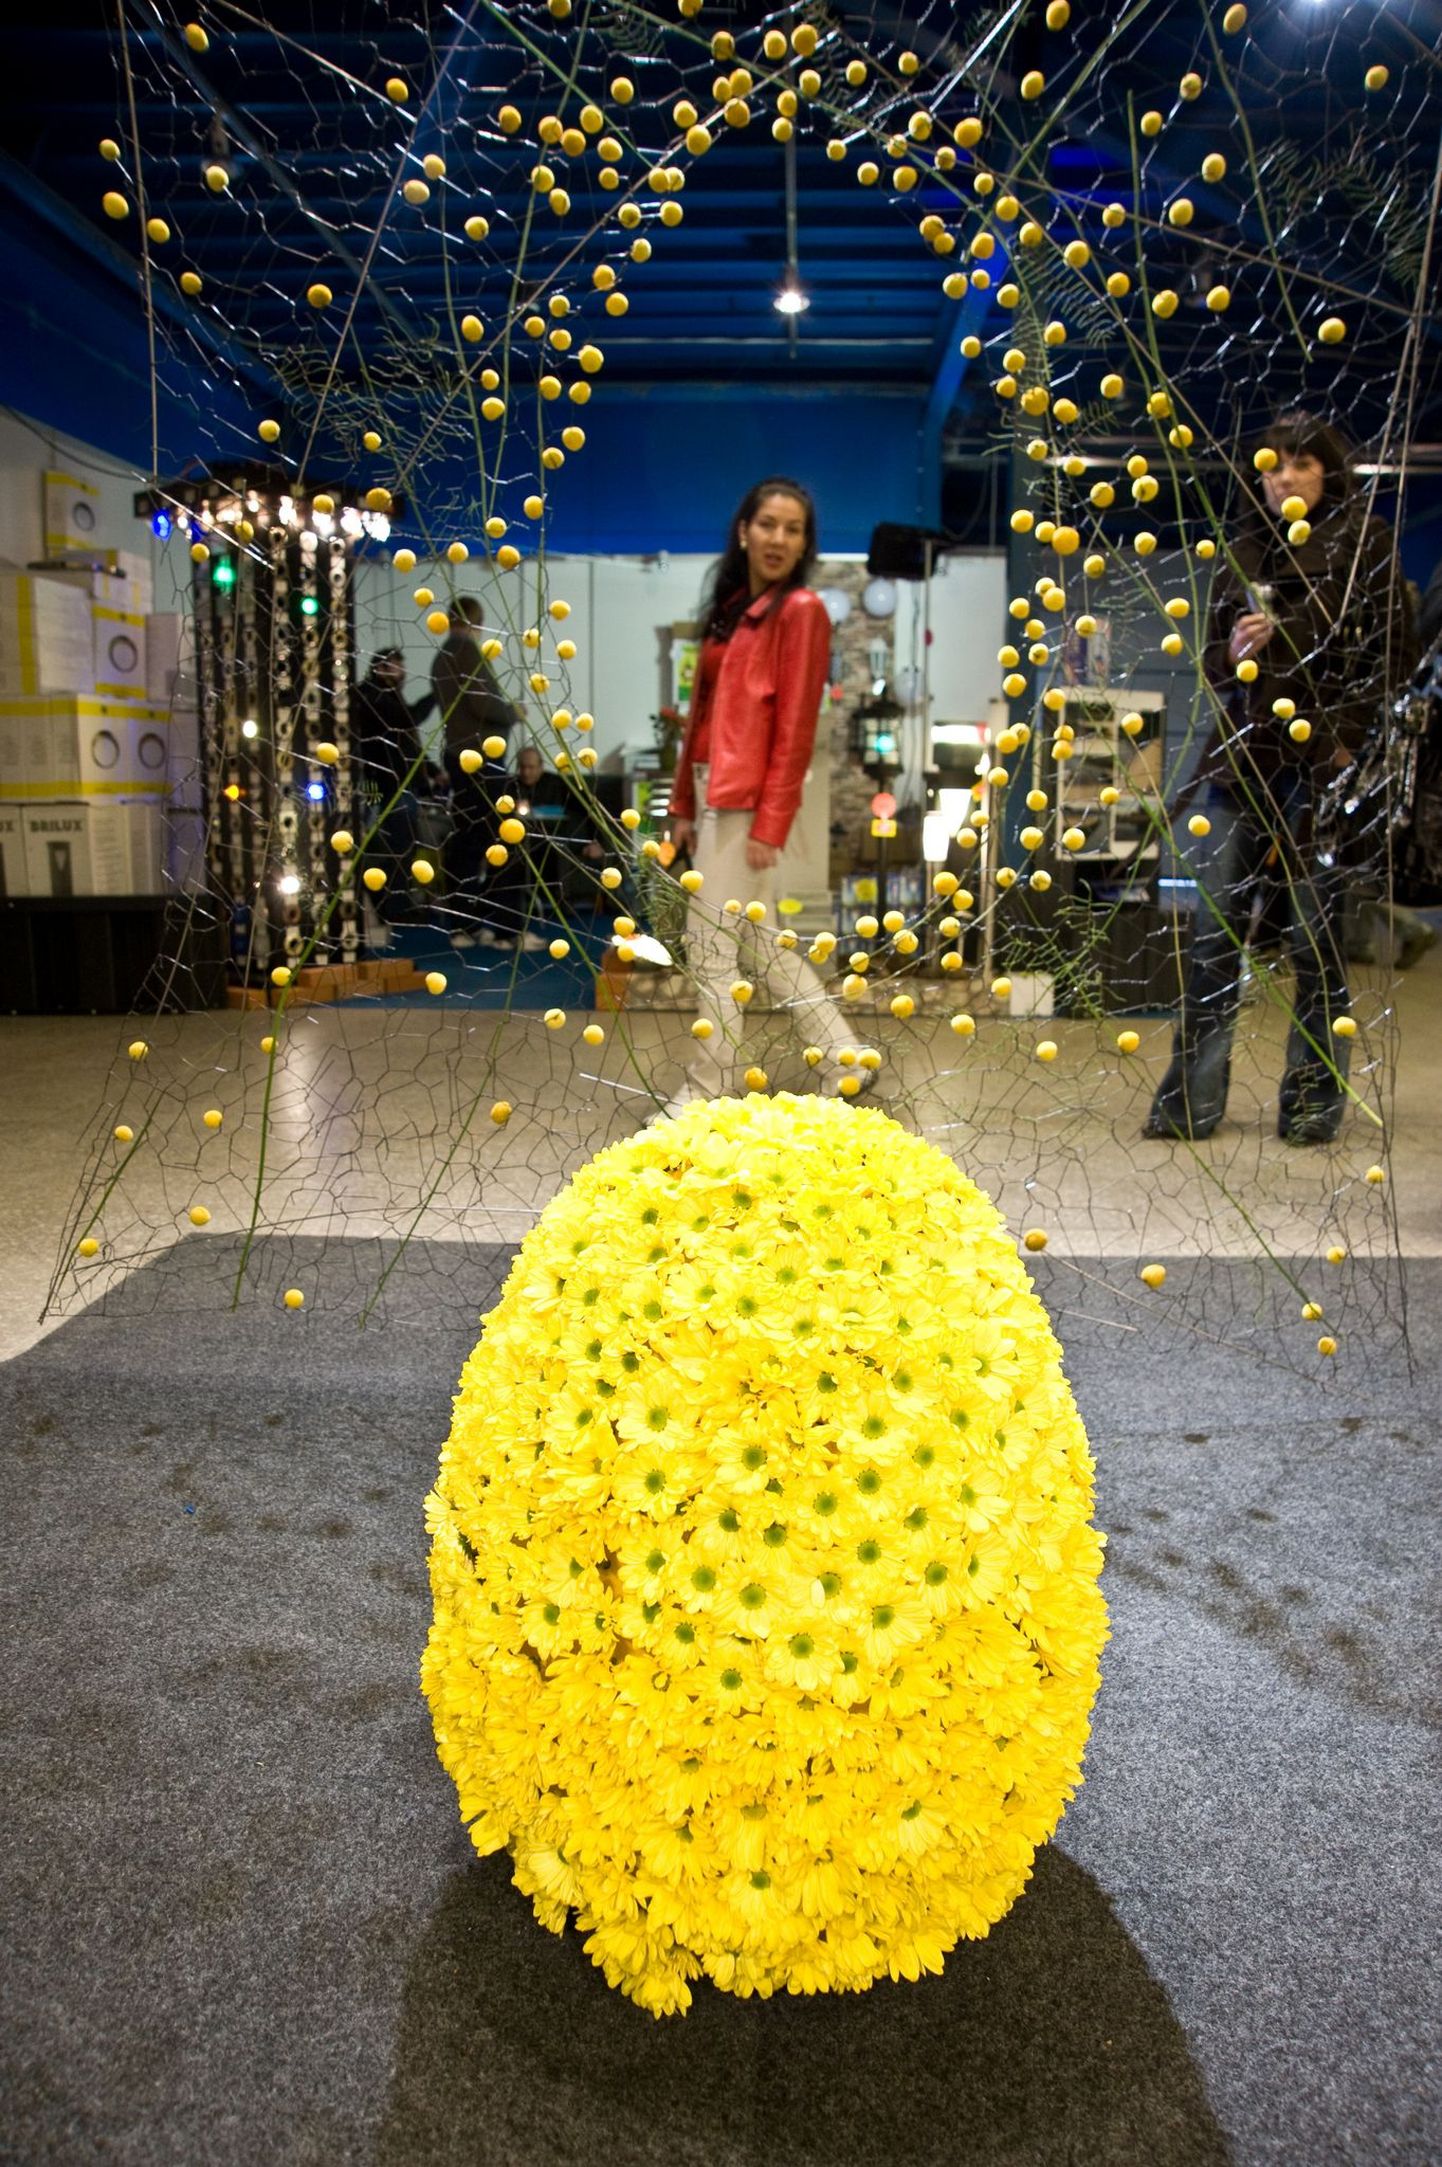 19. märtsil toimus Näituste paviljonis suur lilleseadjate konkurss, mille heategevusoksjonil osalesid ka eesti staarid. Oksjoniga koguti Haapsalu sanatoorse internaatkooli toetuseks 25 000 krooni.